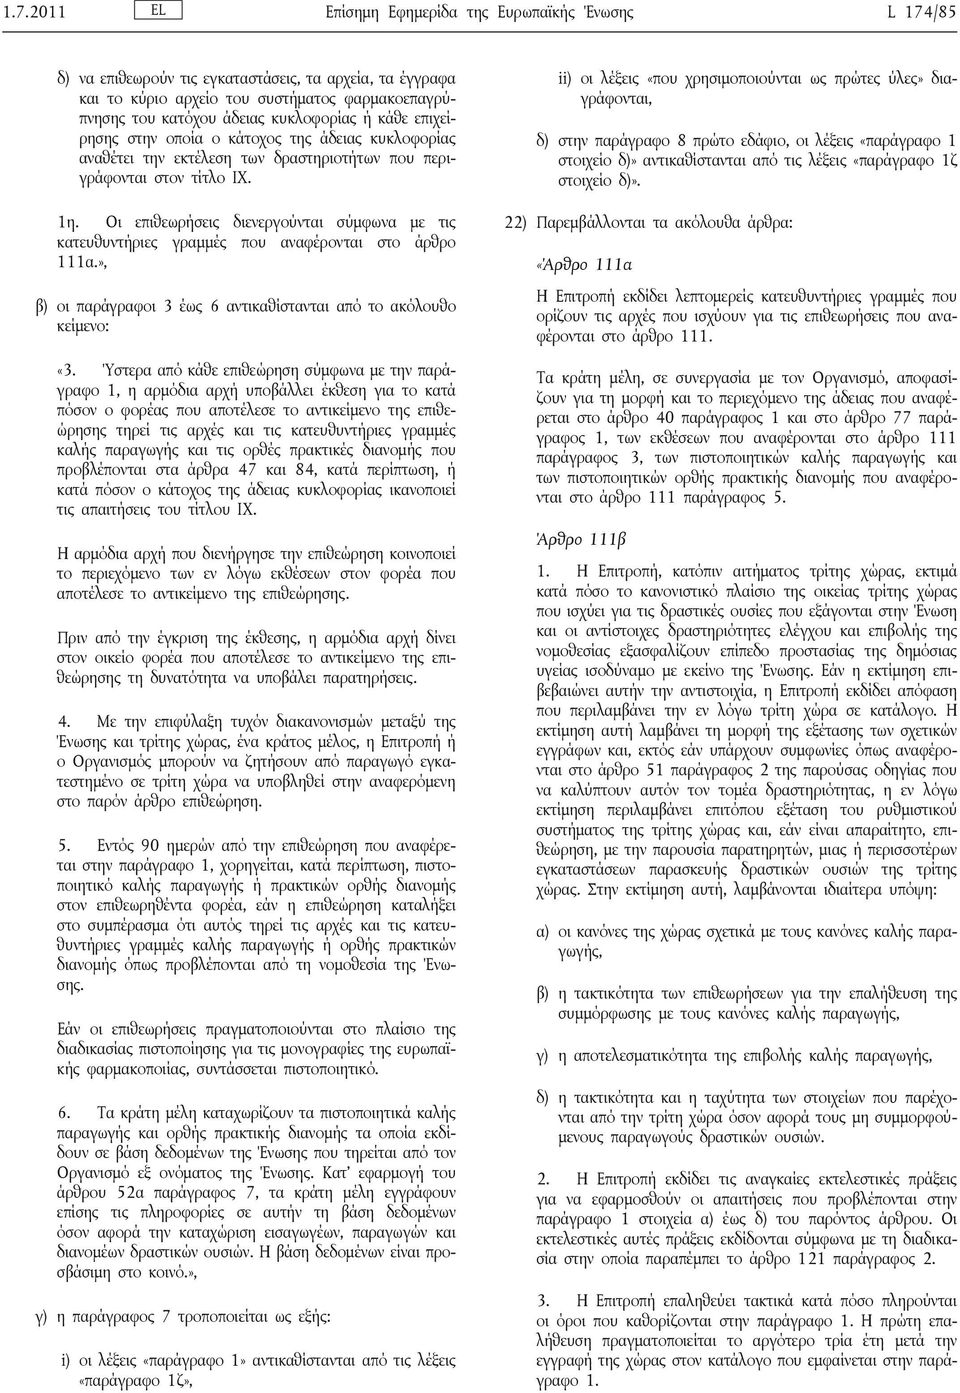 Οι επιθεωρήσεις διενεργούνται σύμφωνα με τις κατευθυντήριες γραμμές που αναφέρονται στο άρθρο 111α.», β) οι παράγραφοι 3 έως 6 αντικαθίστανται από το ακόλουθο κείμενο: «3.